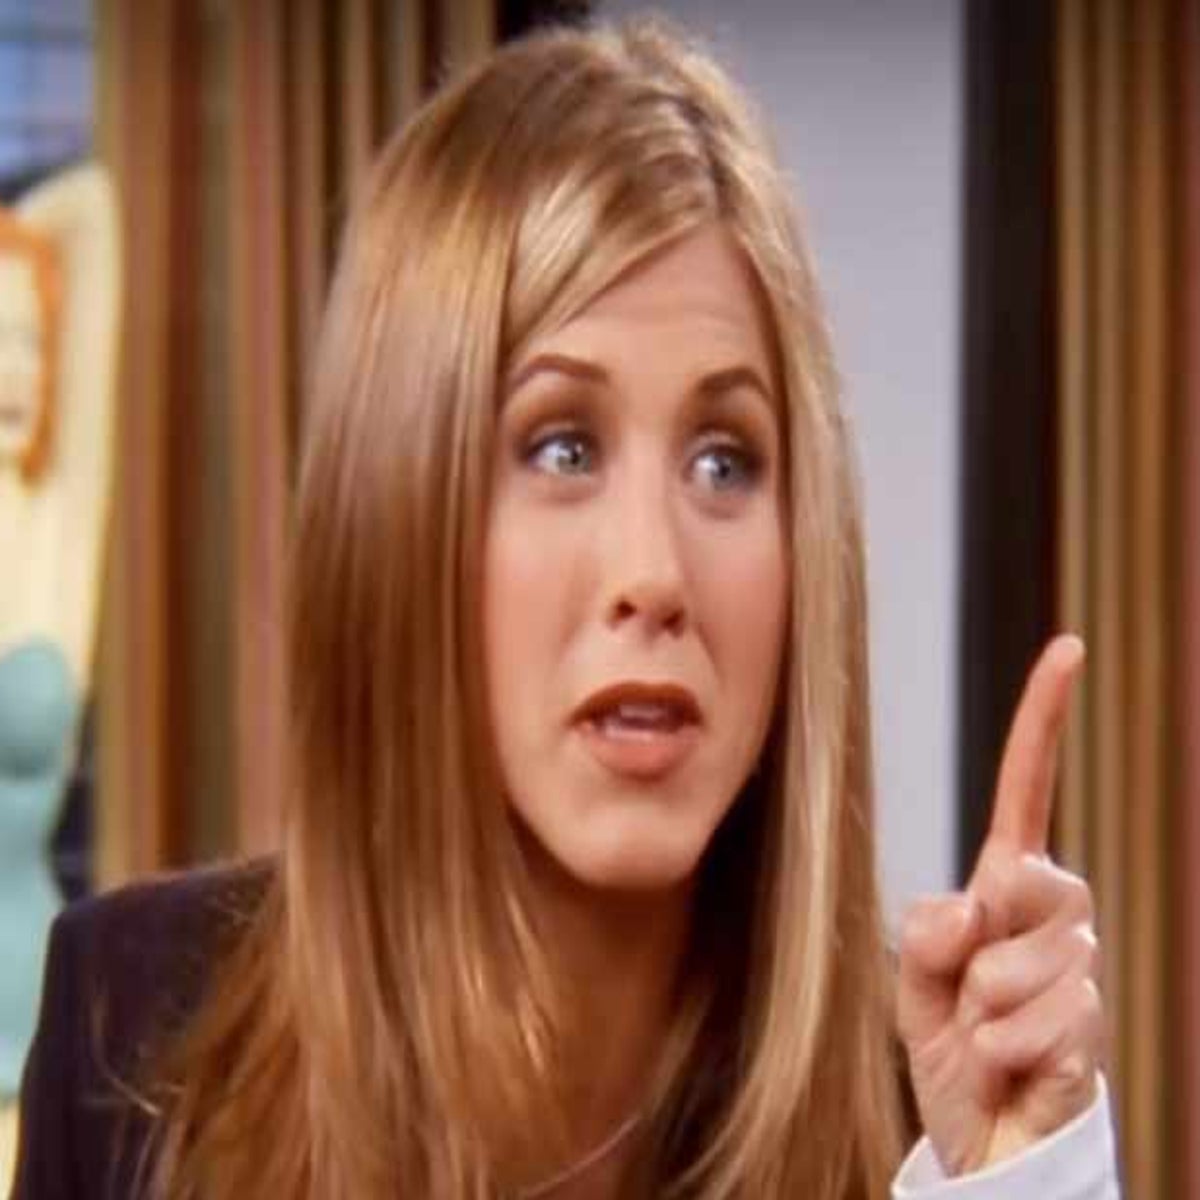 Jennifer Aniston Was Not Fan of 'The Rachel' Haircut from Friends